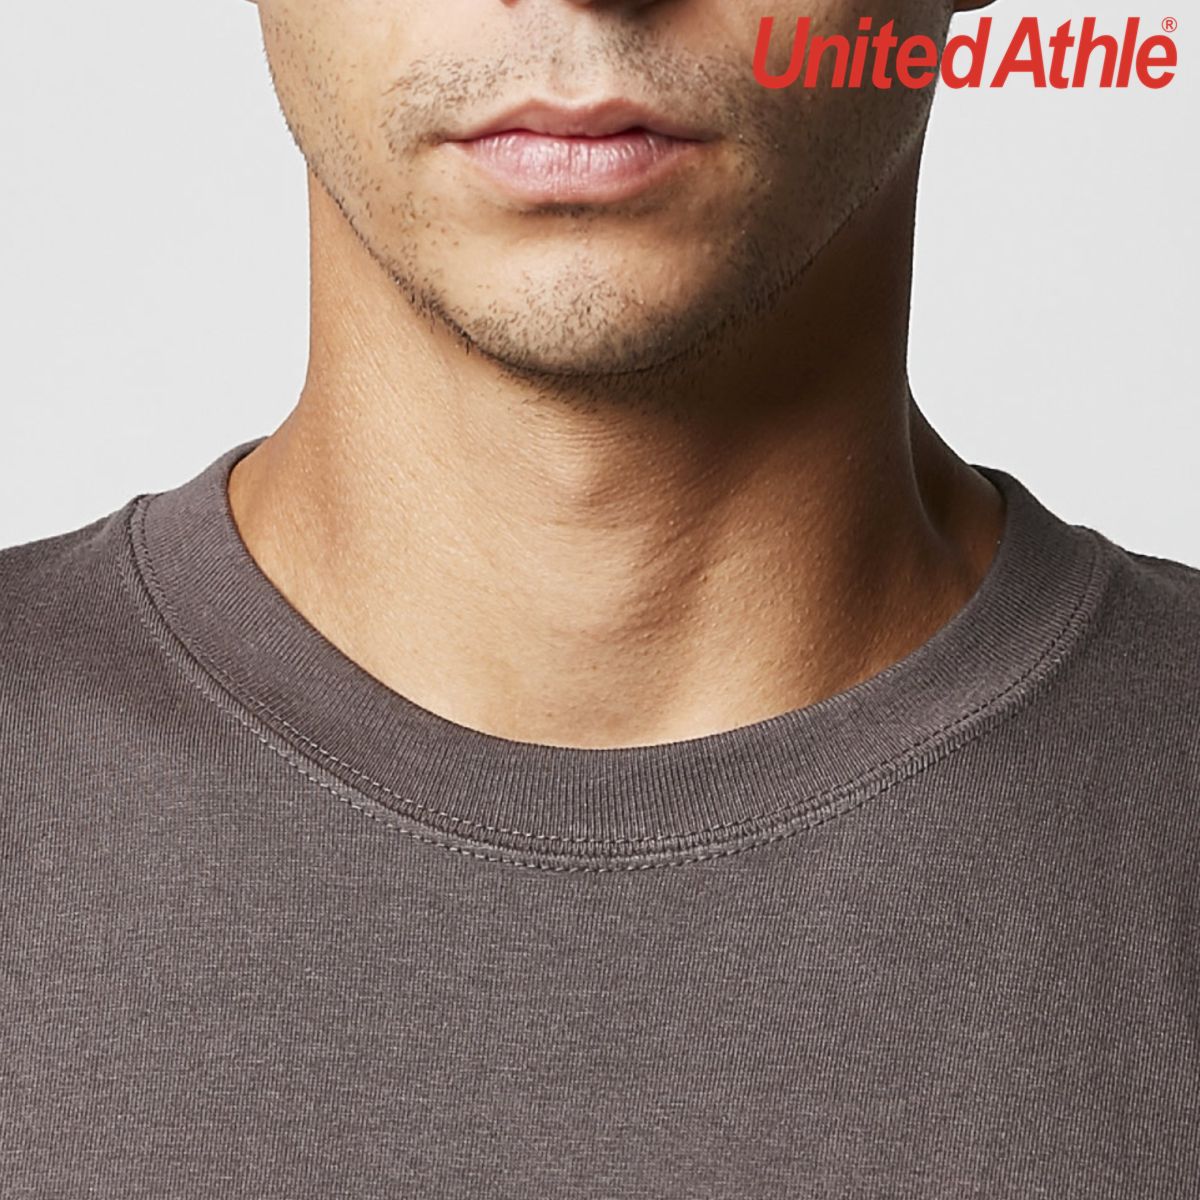 UA5001 - United Athle 190g 優質潮流全棉(設有童裝及成人碼)日本短袖圓領T恤